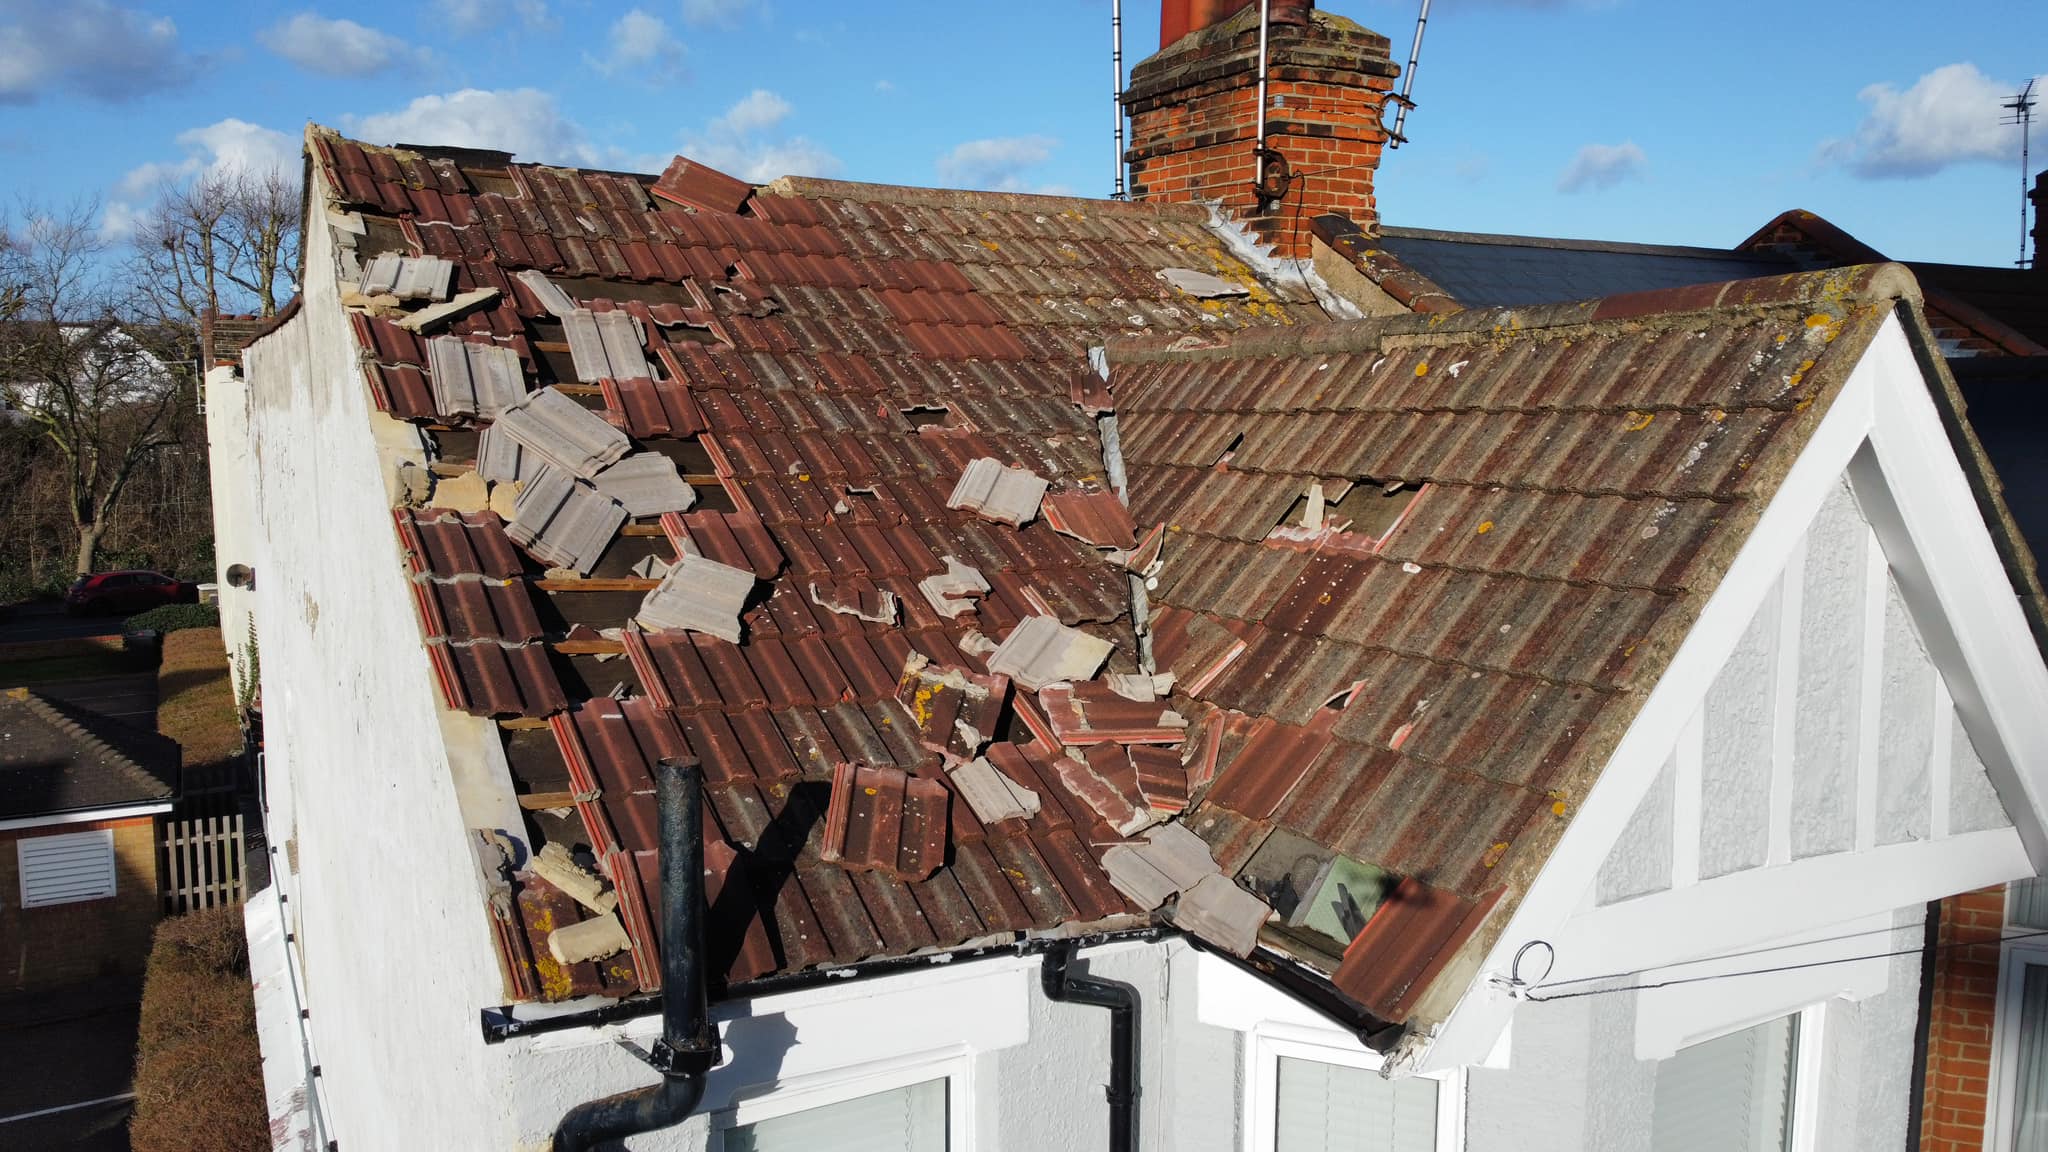 Roof Damage Repair